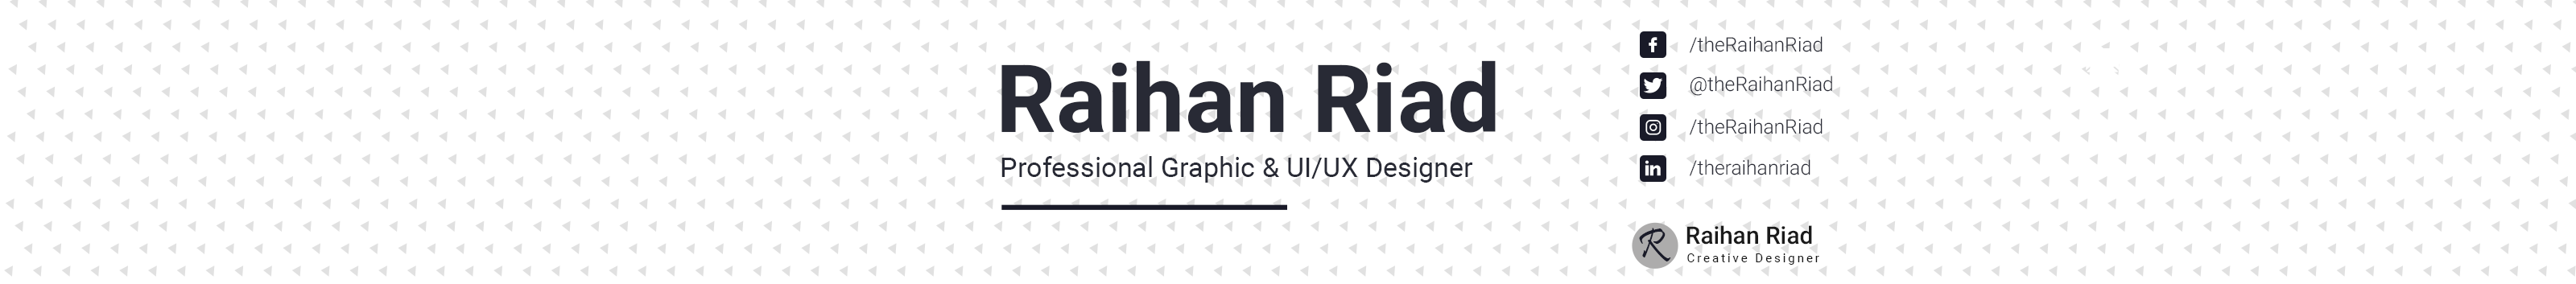 Raihan Riad's profile banner